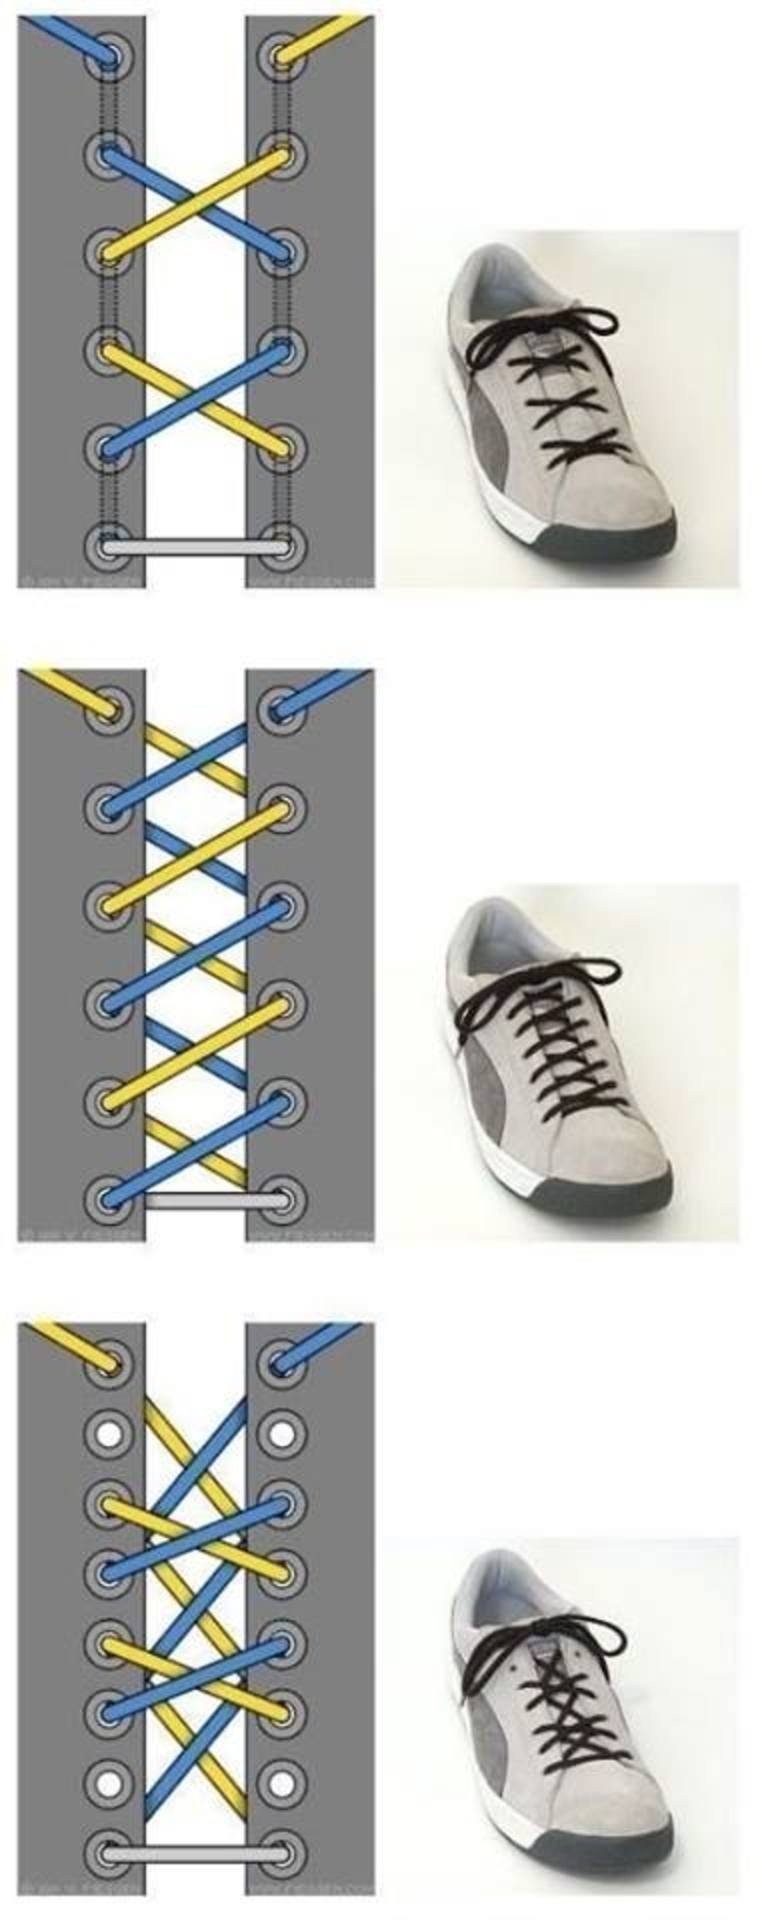 Верхняя шнуровка. Типы шнурования шнурков на 5. Типы шнурования шнурков на 5 дырок. Типы шнурования шнурков на 6 отверстий. Схема завязывания шнурков на кроссовках.